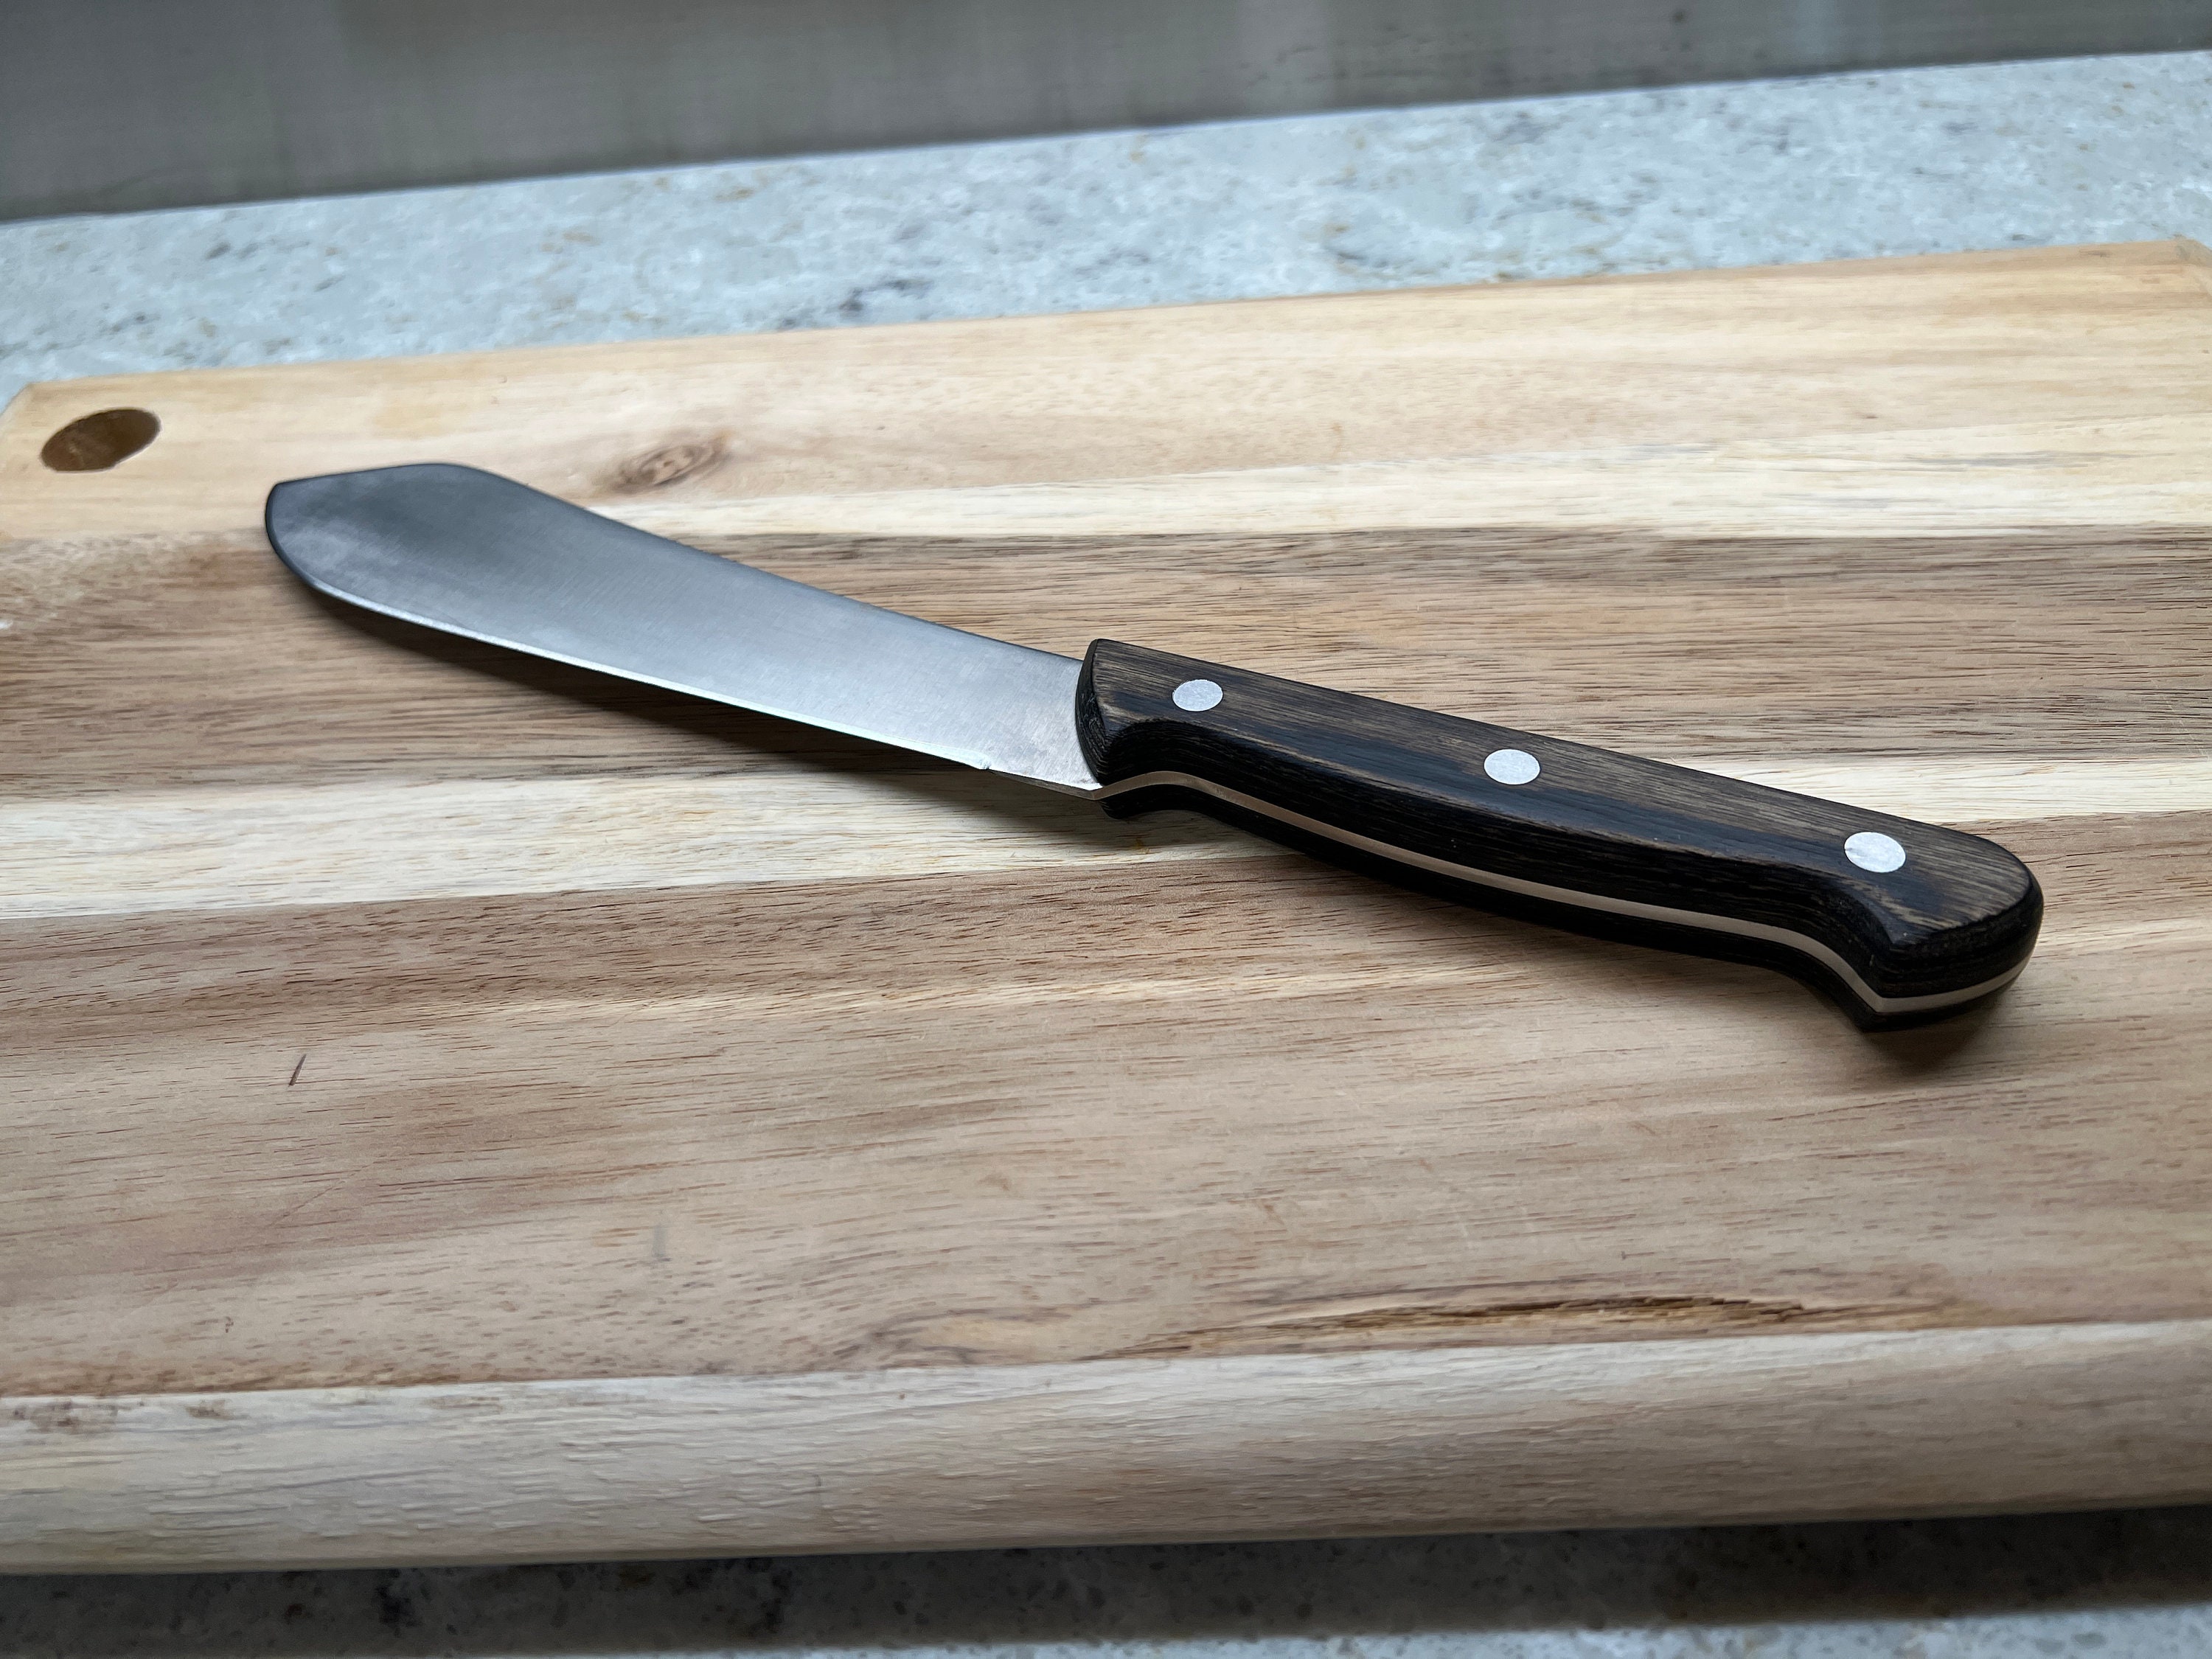 ZWILLING TWINSHARP Duo Stainless Steel Handheld Knife Sharpener, 9.5